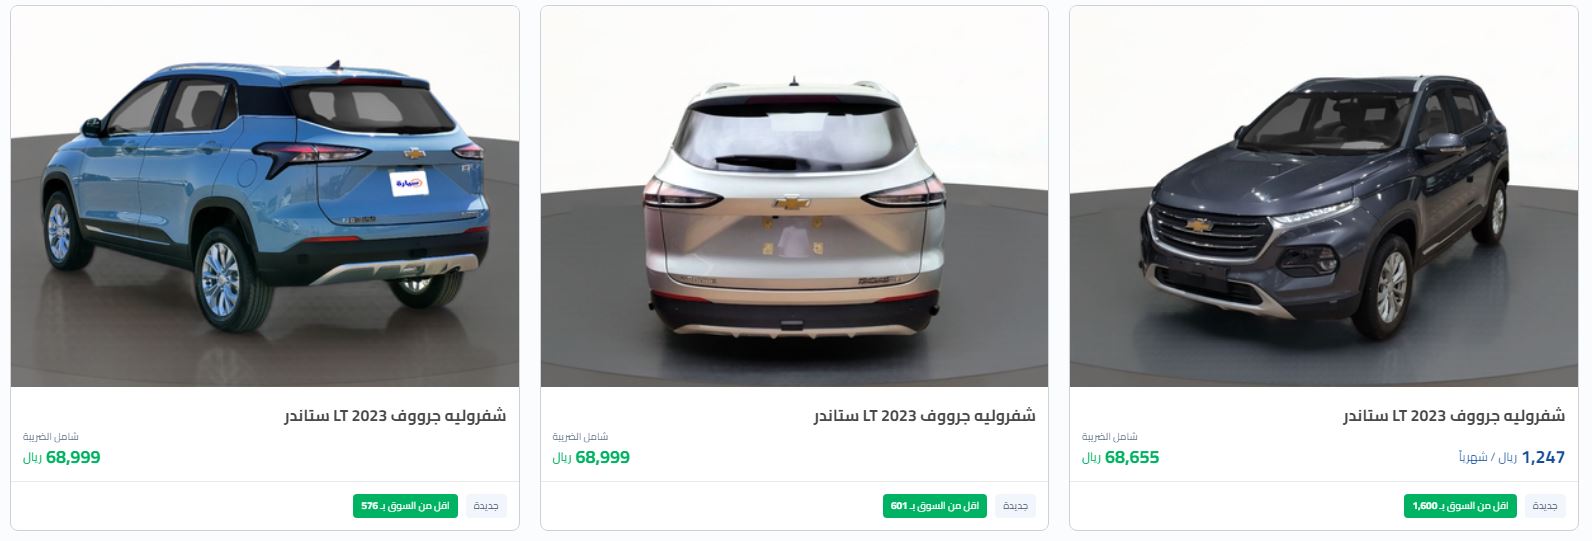 اقل اسعار سيارات شيفورليه الجديدة السعوديه 2022